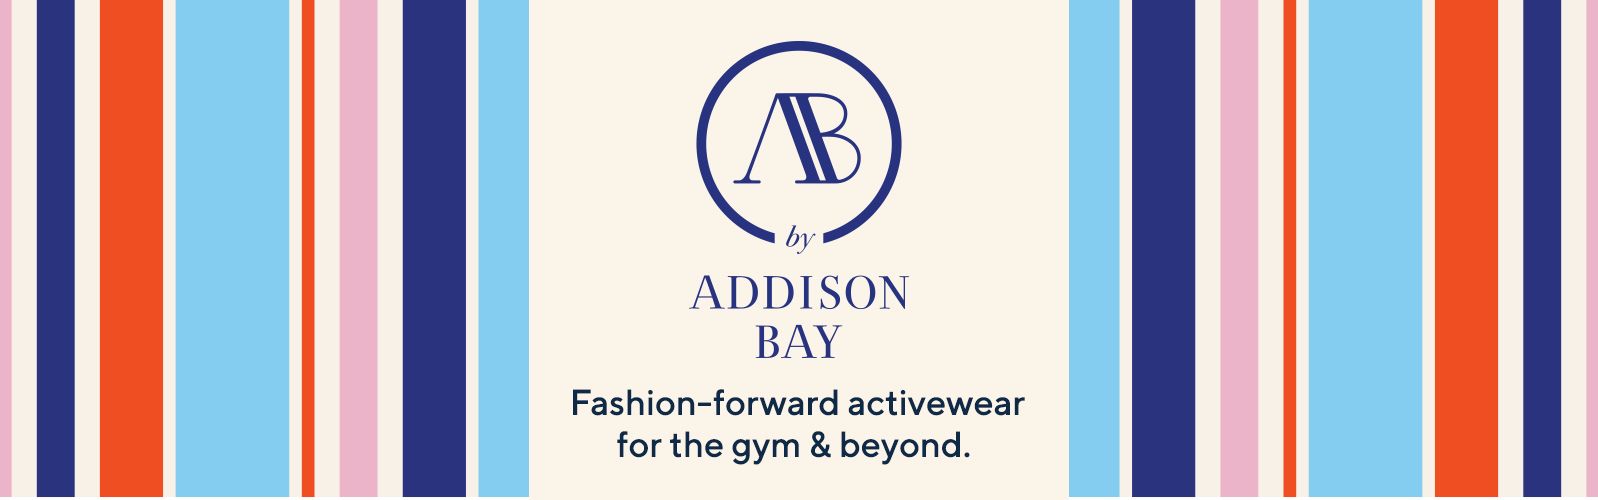 AB by Addison Bay 